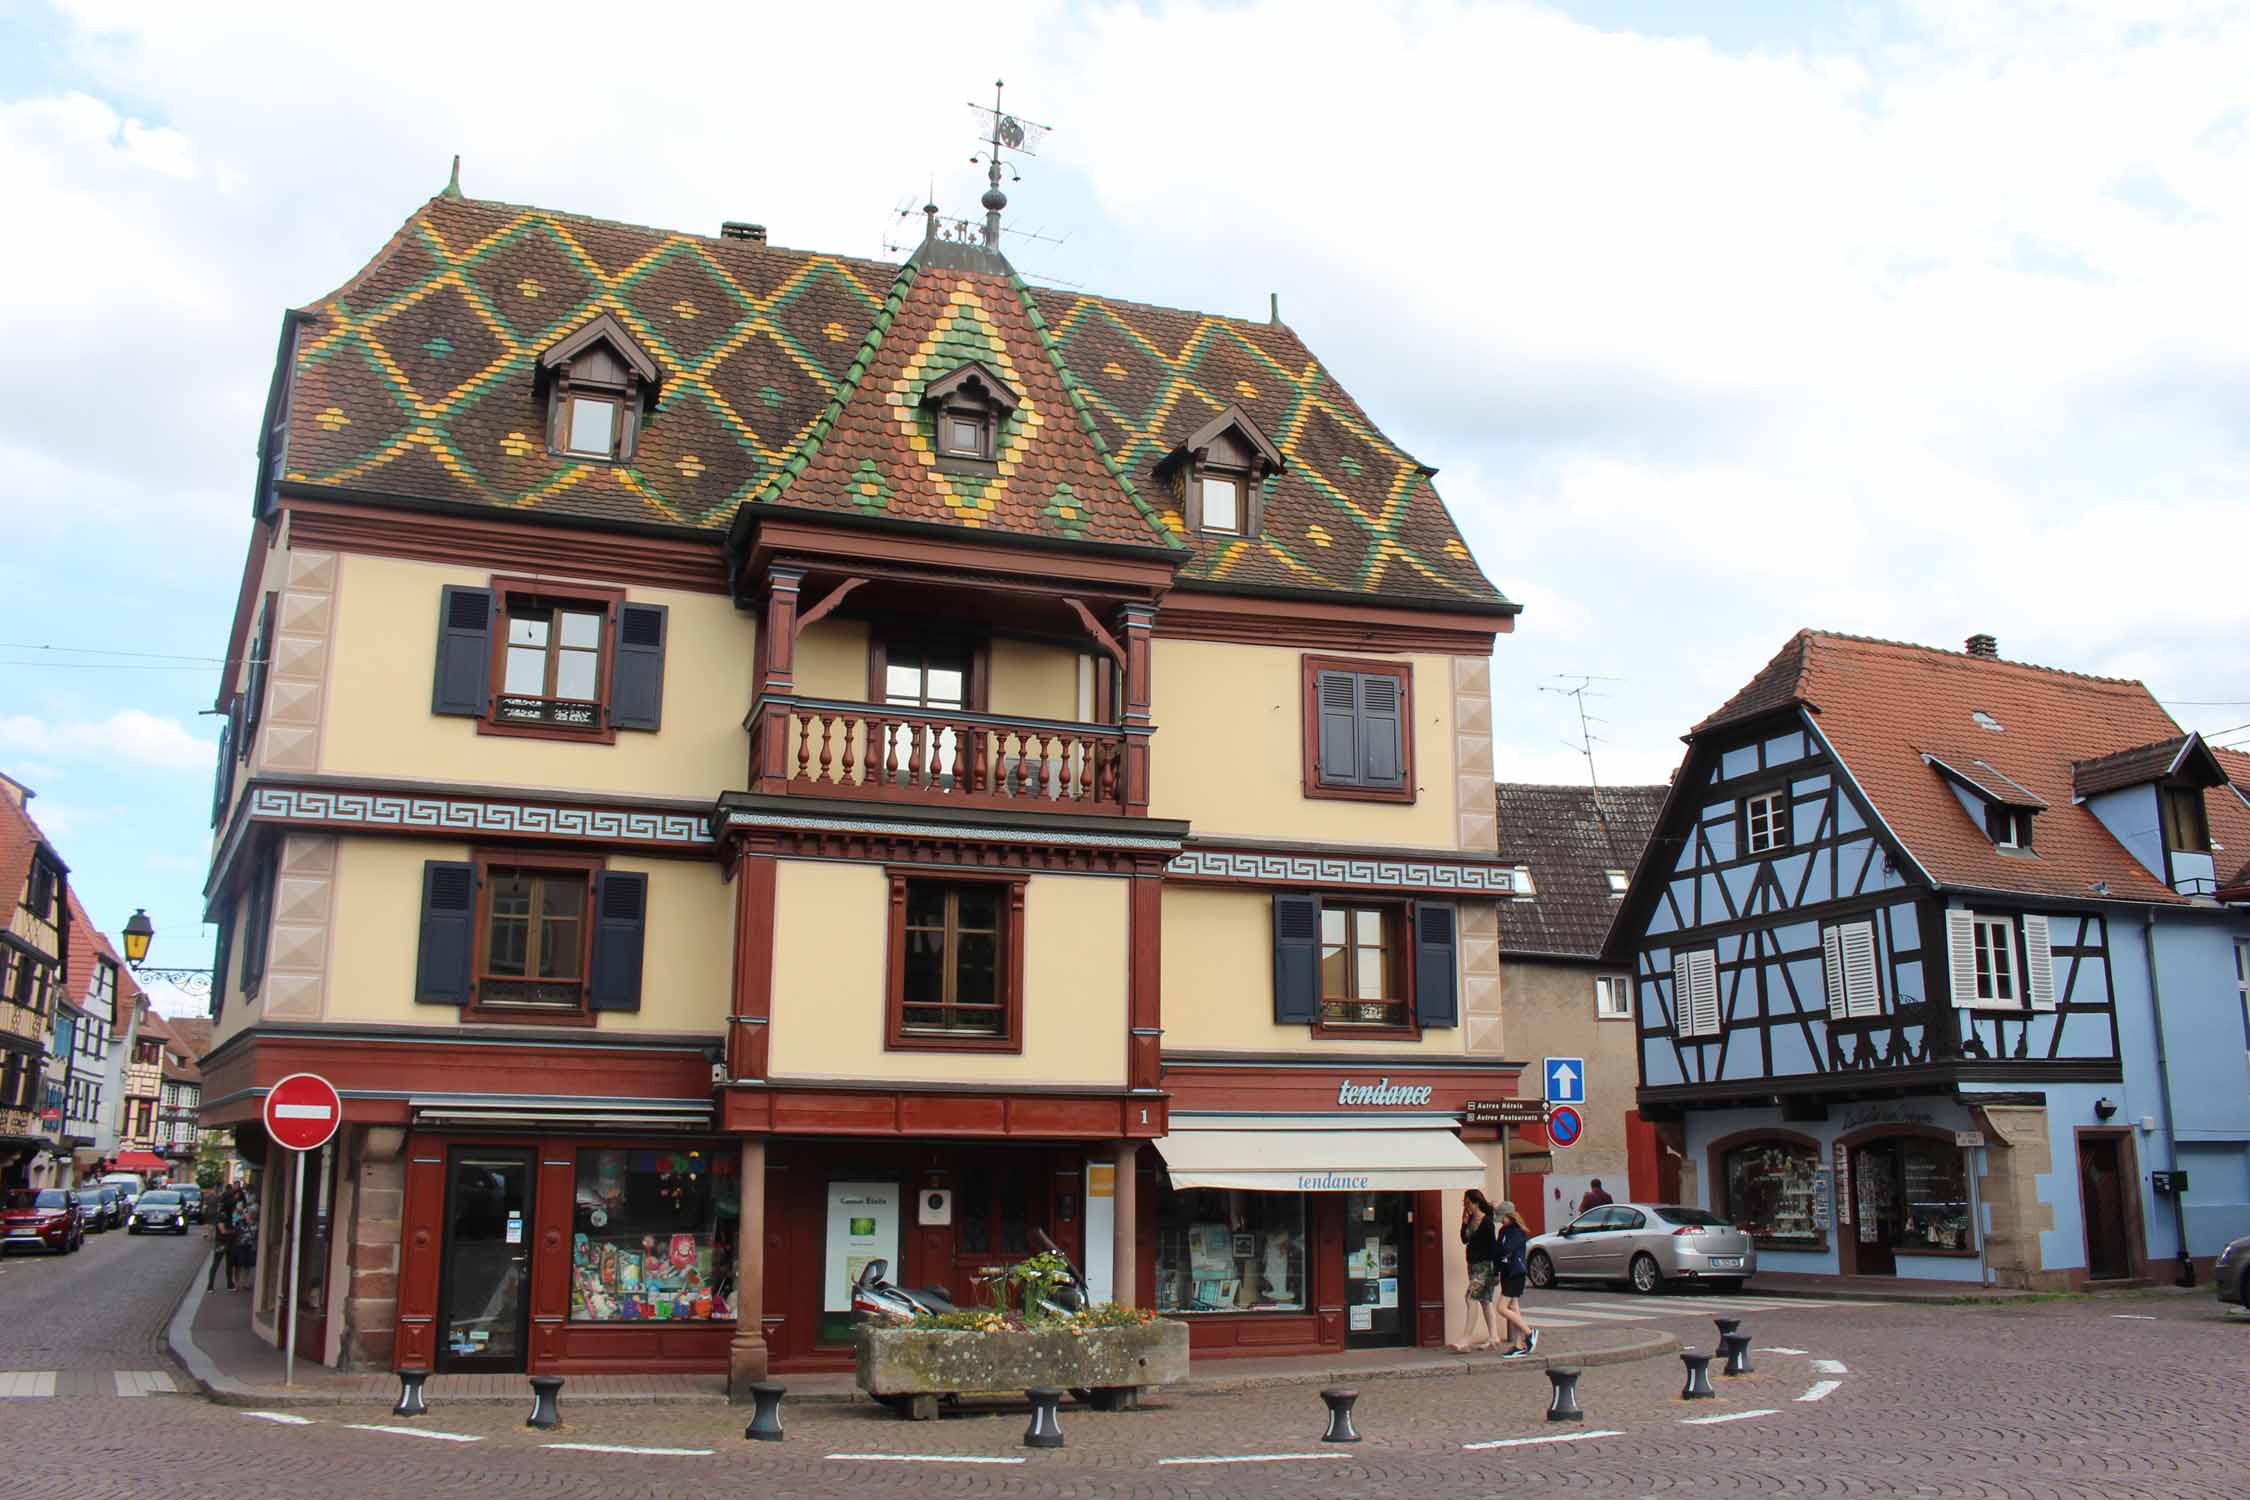 Obernai, Alsace maisons typiques